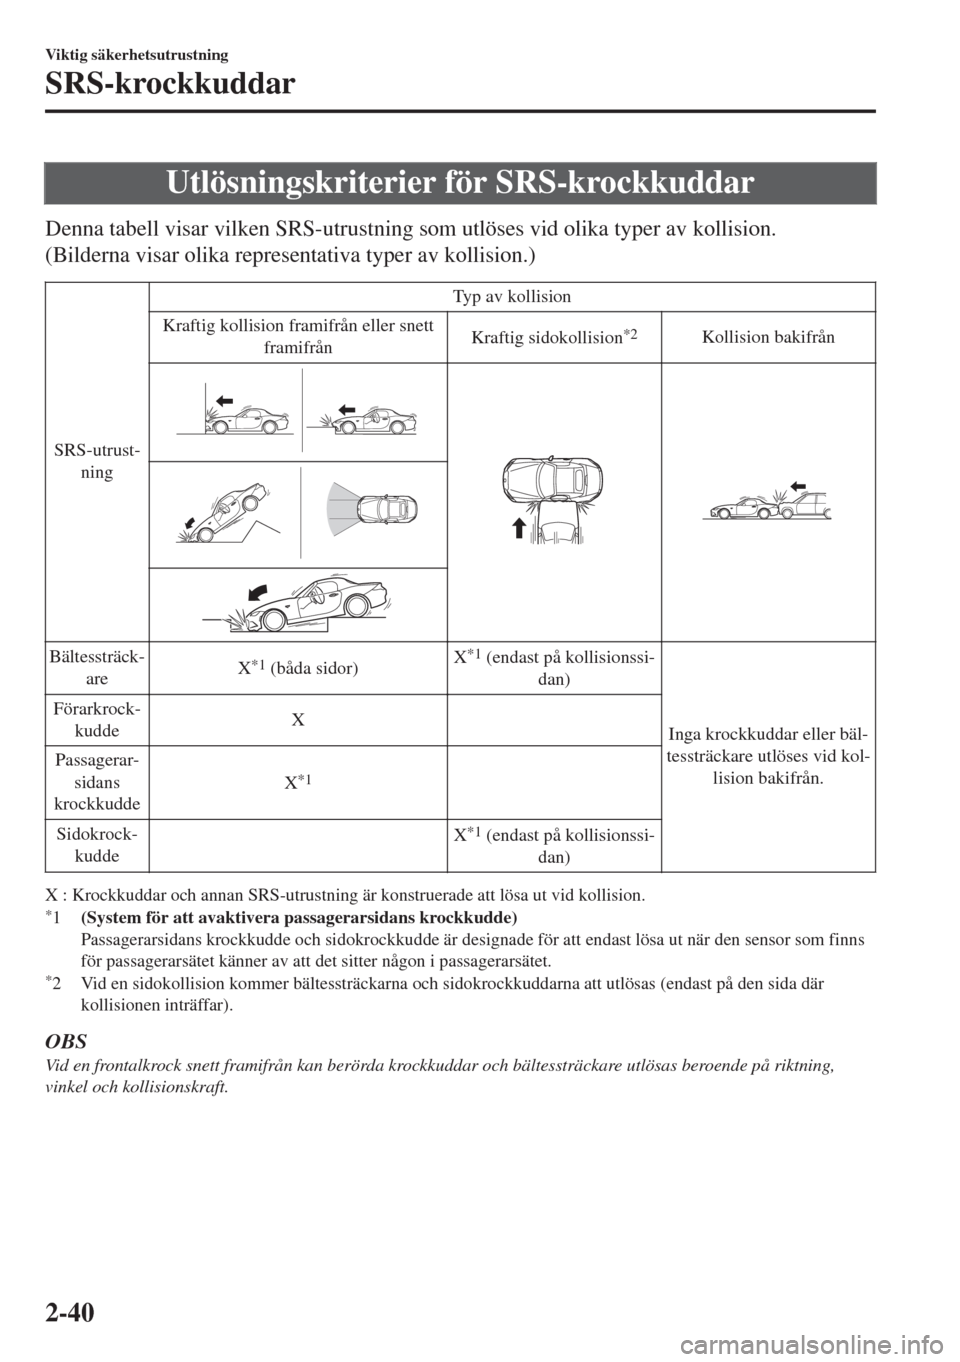 MAZDA MODEL MX-5 2017  Ägarmanual (in Swedish) Utlösningskriterier för SRS-krockkuddar
Denna tabell visar vilken SRS-utrustning som utlöses vid olika typer av kollision.
(Bilderna visar olika representativa typer av kollision.)
SRS-utrust-
ning